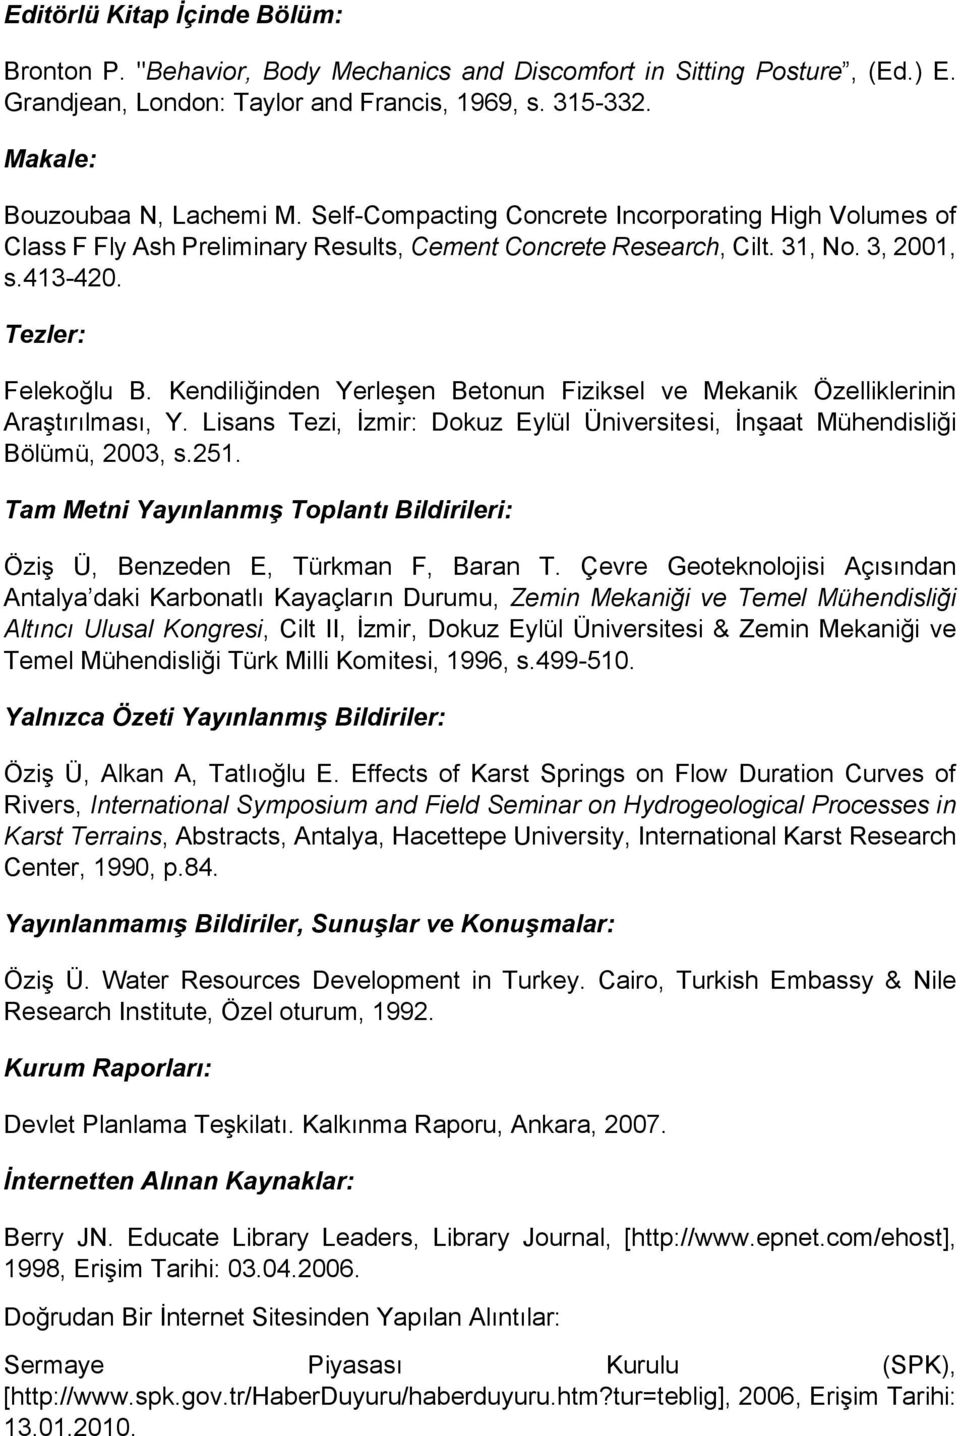 Kendiliğinden Yerleşen Betonun Fiziksel ve Mekanik Özelliklerinin Araştırılması, Y. Lisans Tezi, İzmir: Dokuz Eylül Üniversitesi, İnşaat Mühendisliği Bölümü, 2003, s.251.